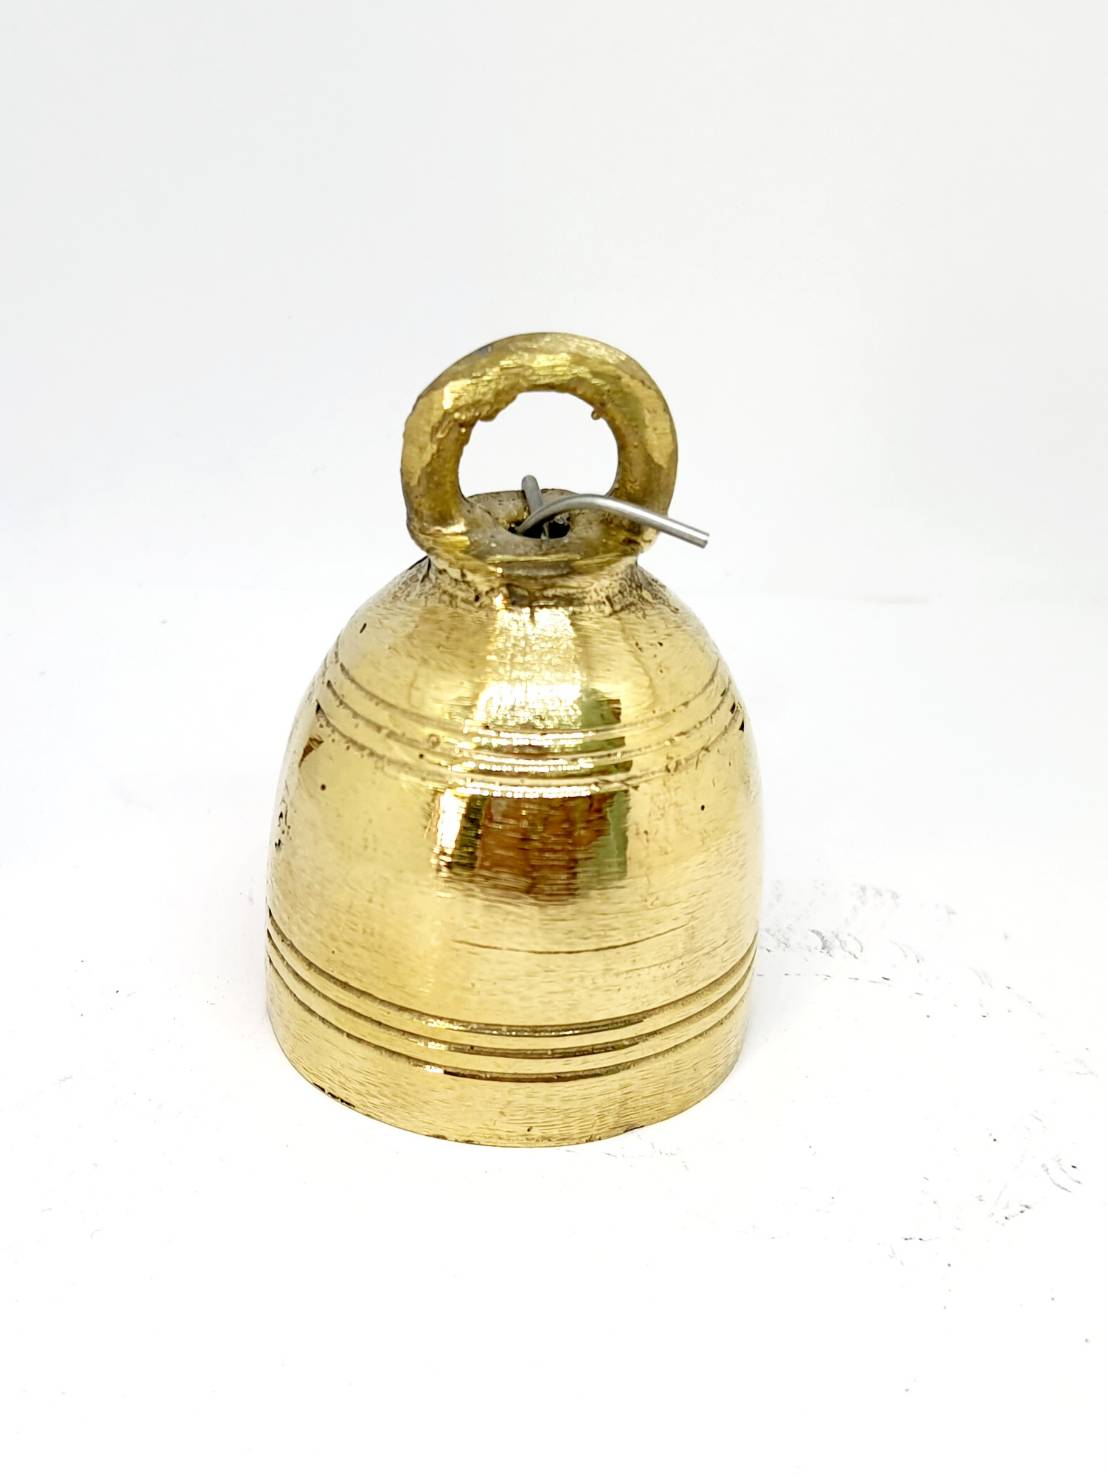 รูปภาพที่1 ของสินค้า : R087 ระฆังทองเหลืองเล็กกลม (3 cm) 